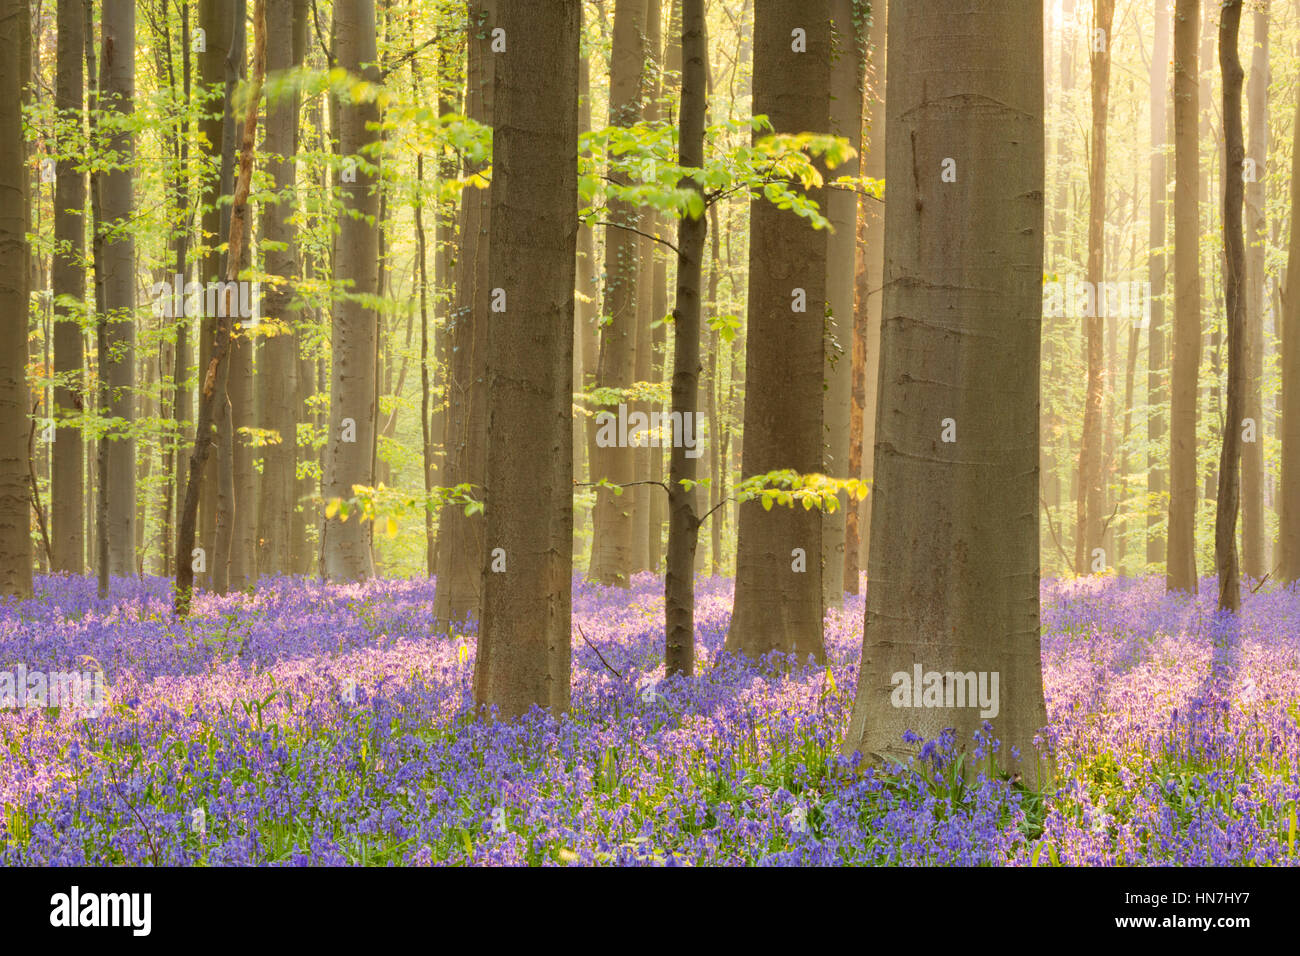 Une belle floraison au début de forêt bluebell la lumière du soleil du matin. Photographié dans la forêt de Halle (Hallerbos) en Belgique. Banque D'Images